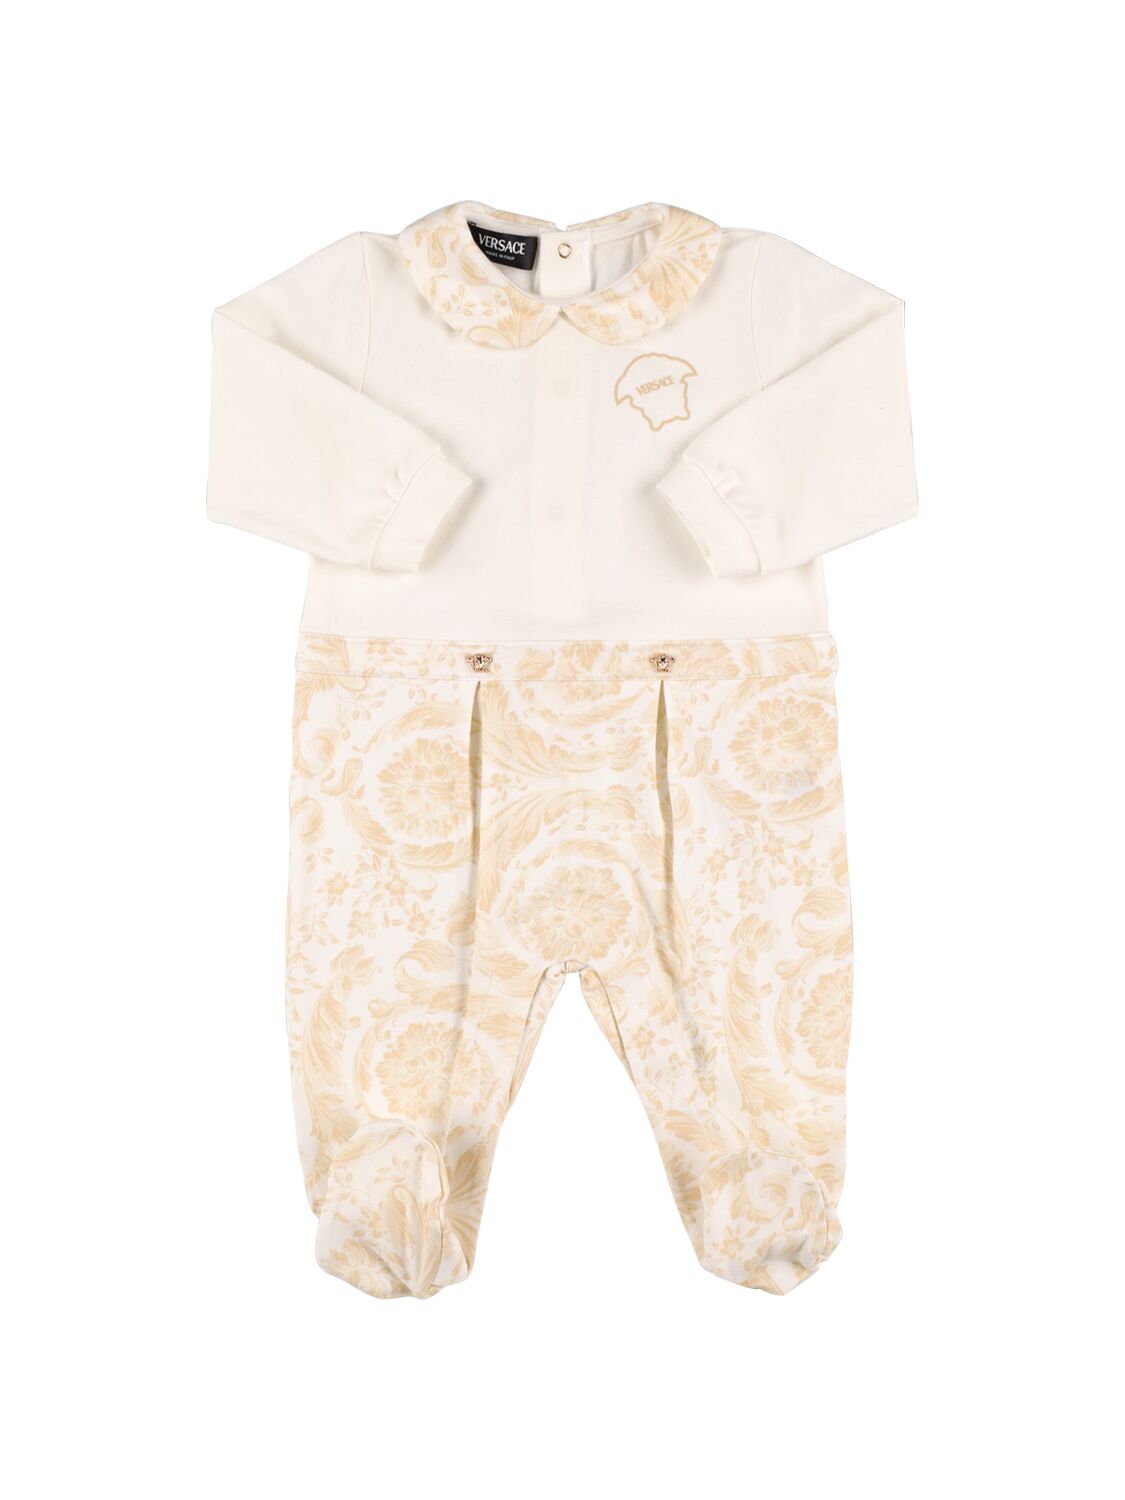 Versace Babies' Baroque印花棉质平纹针织连体衣 In White,beige